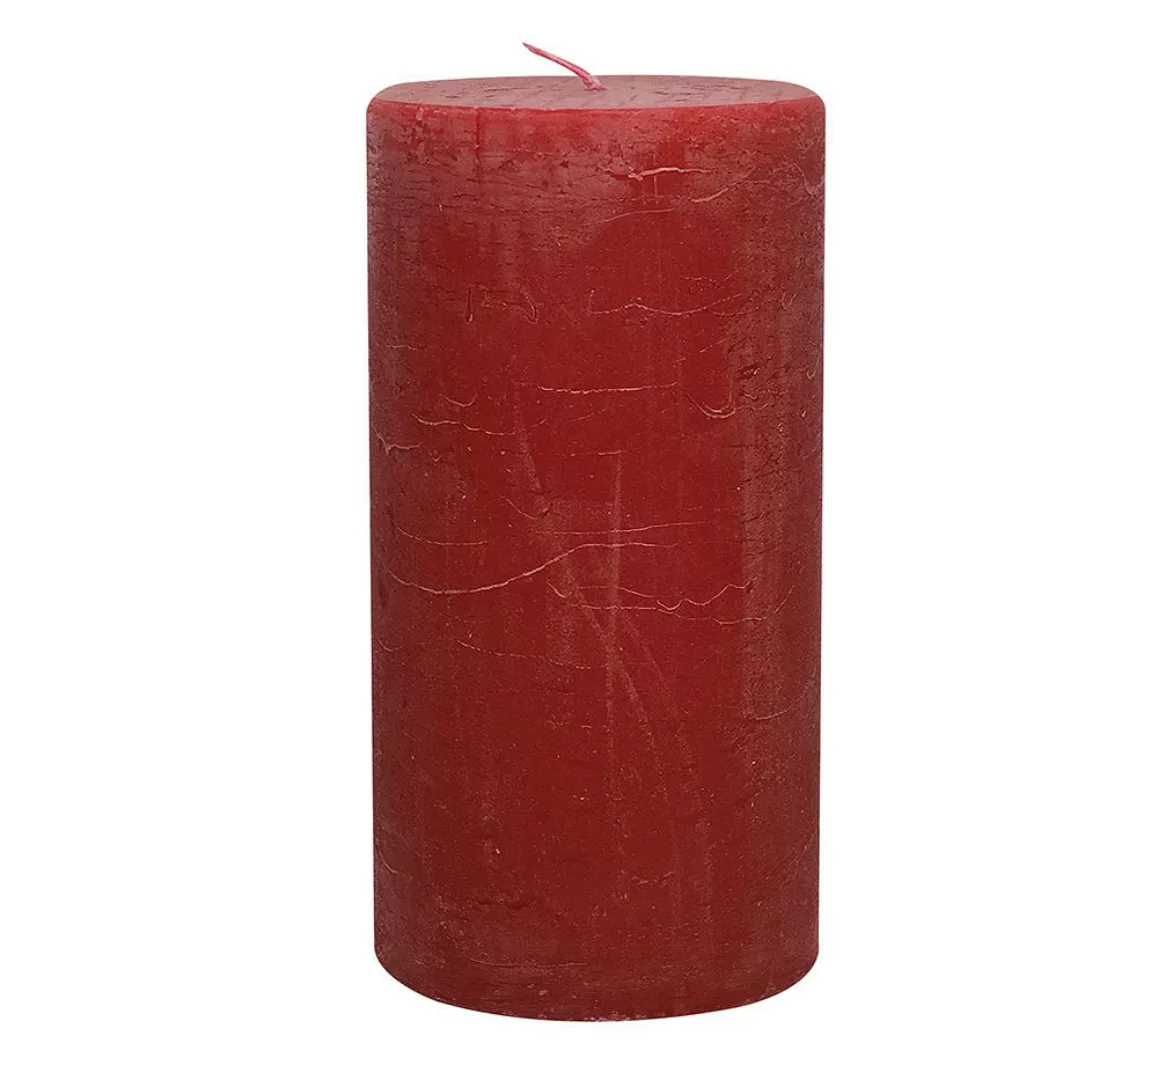 Rustic Stumpenkerze Premium Kerze Rot 10x20cm - 120 Stunden Brenndauer günstig online kaufen